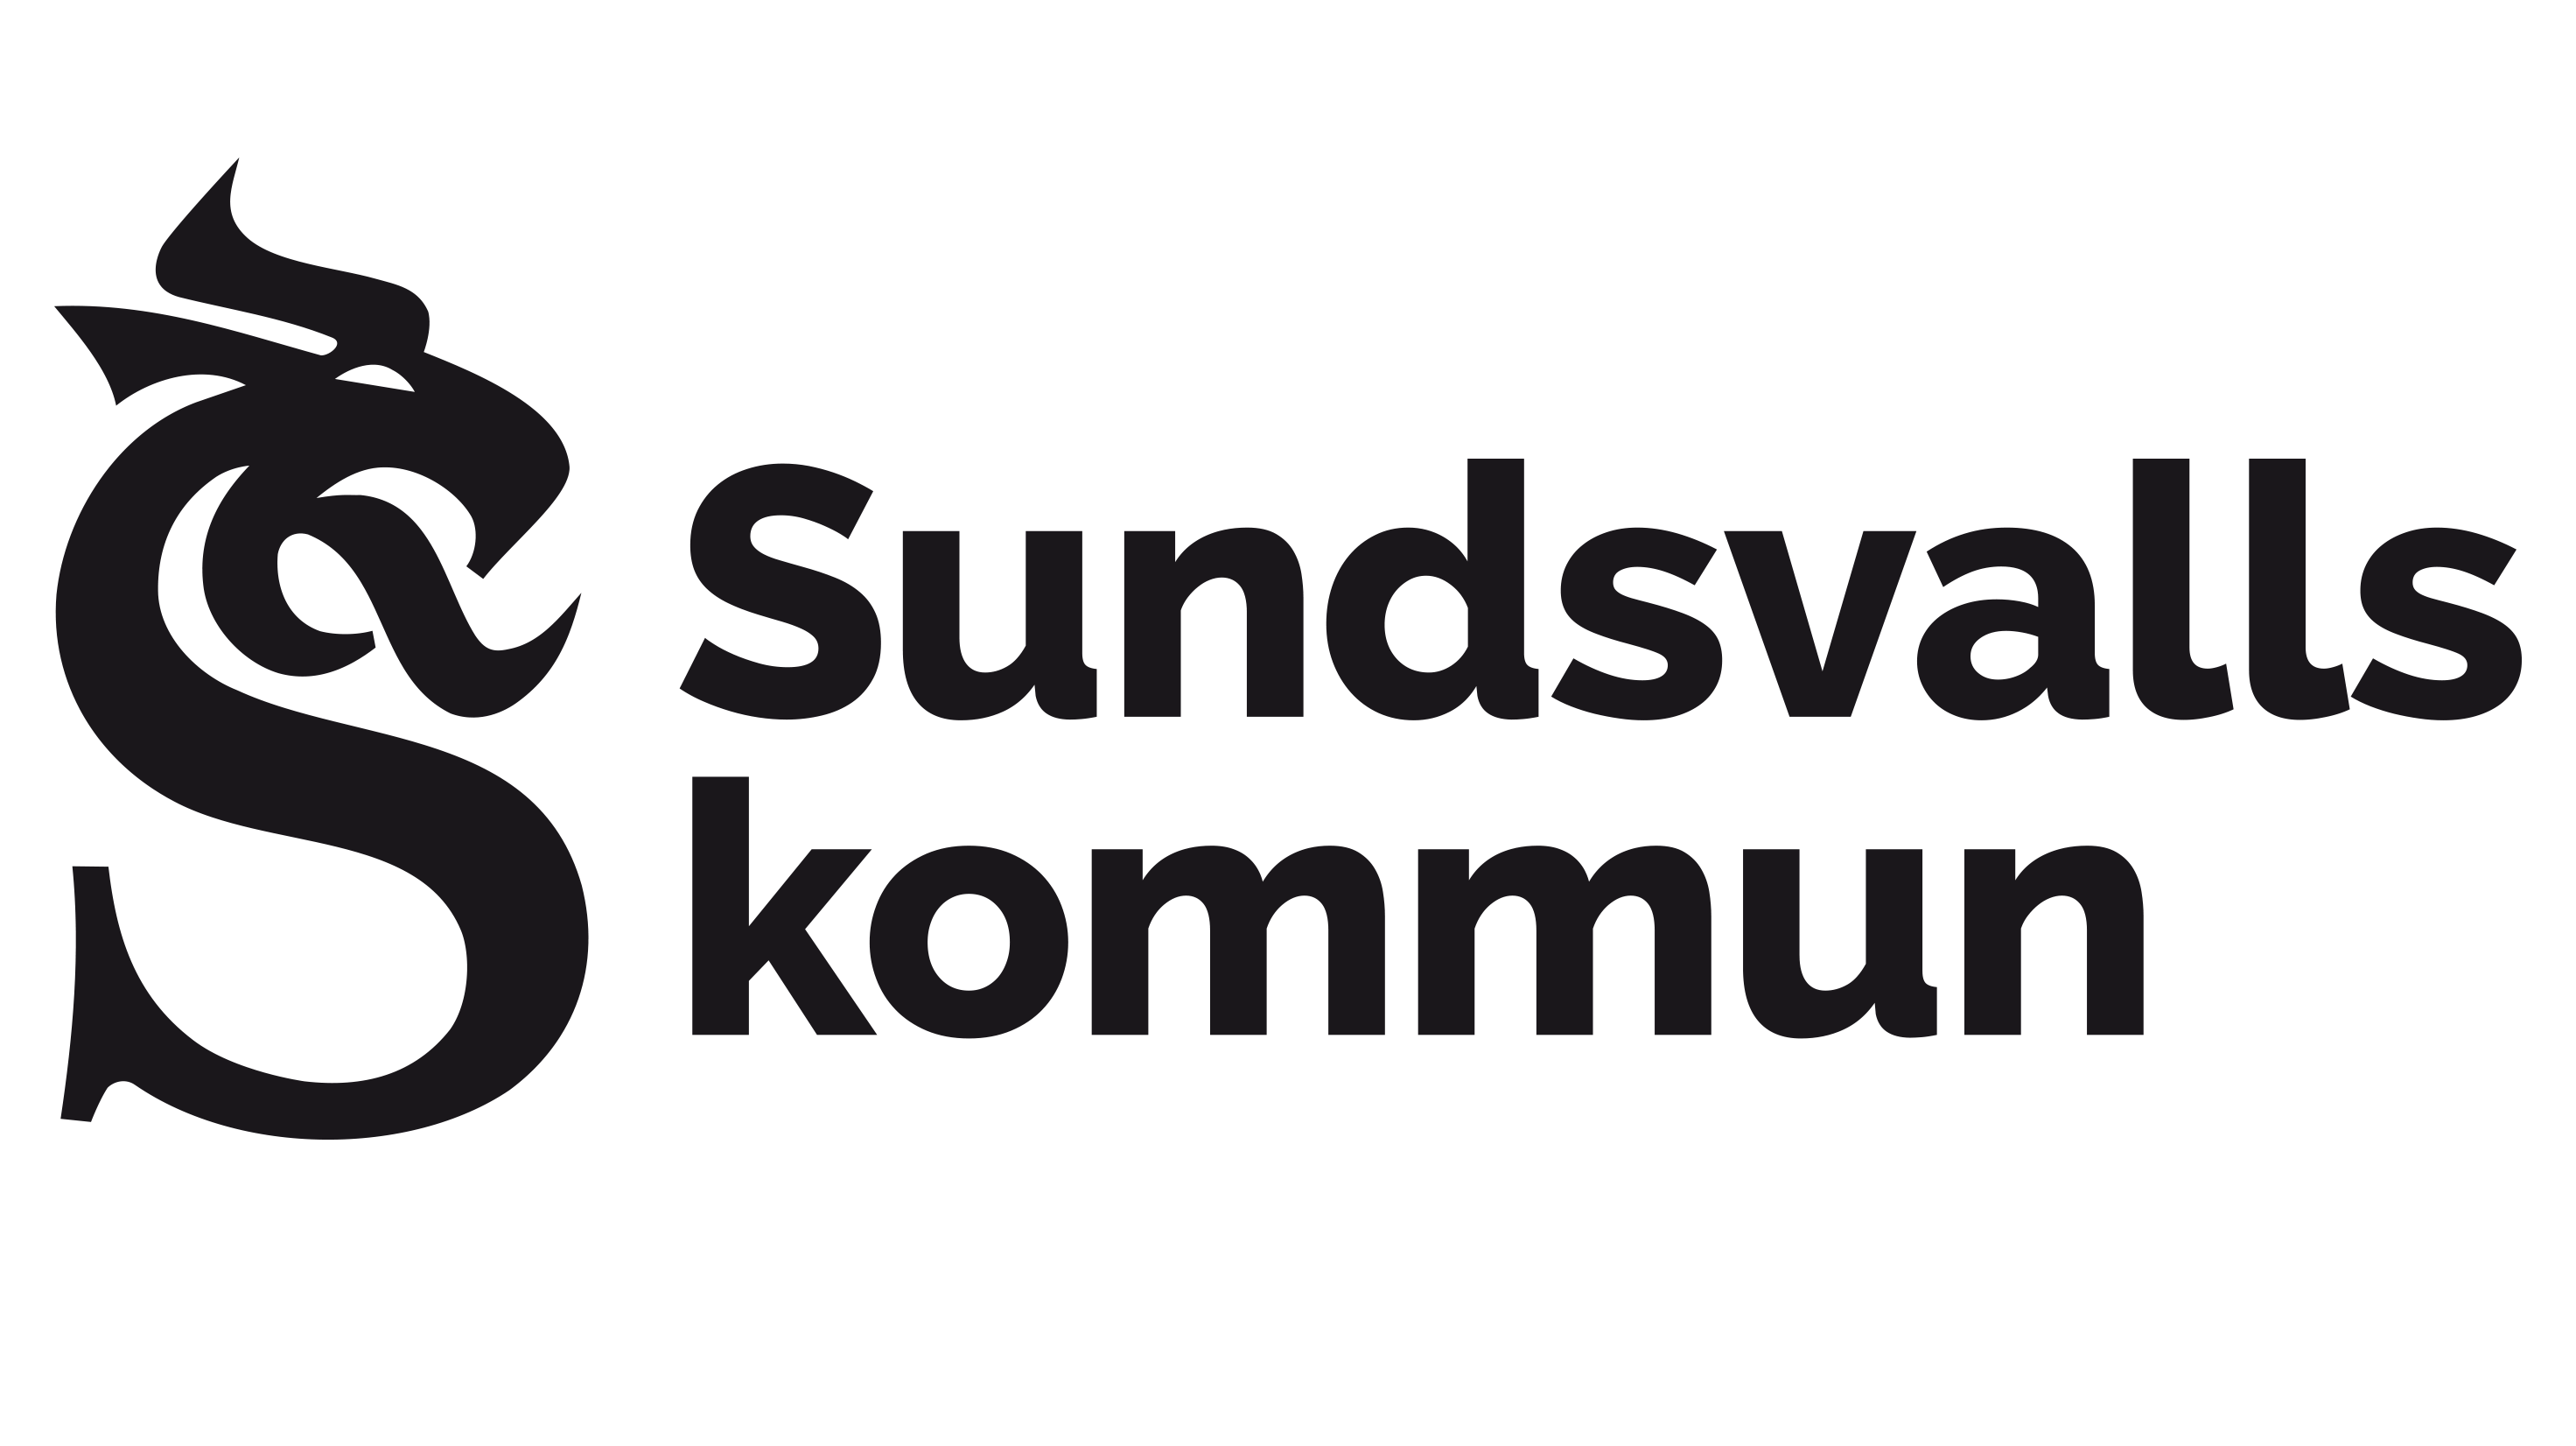 Sundsvalls kommun